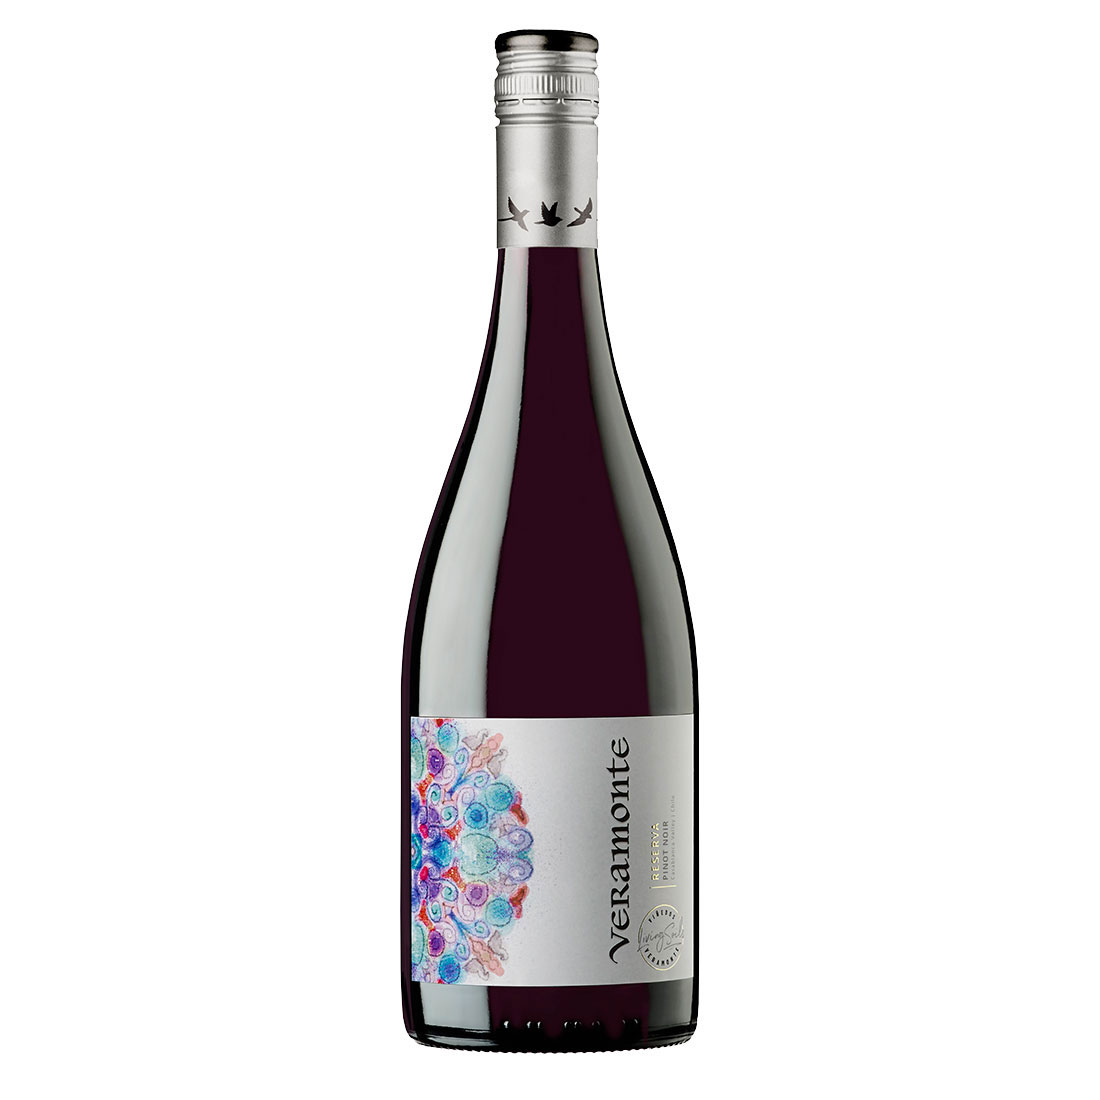 LB_Bottle-Veramonte-Pinot-Noir-Reserva